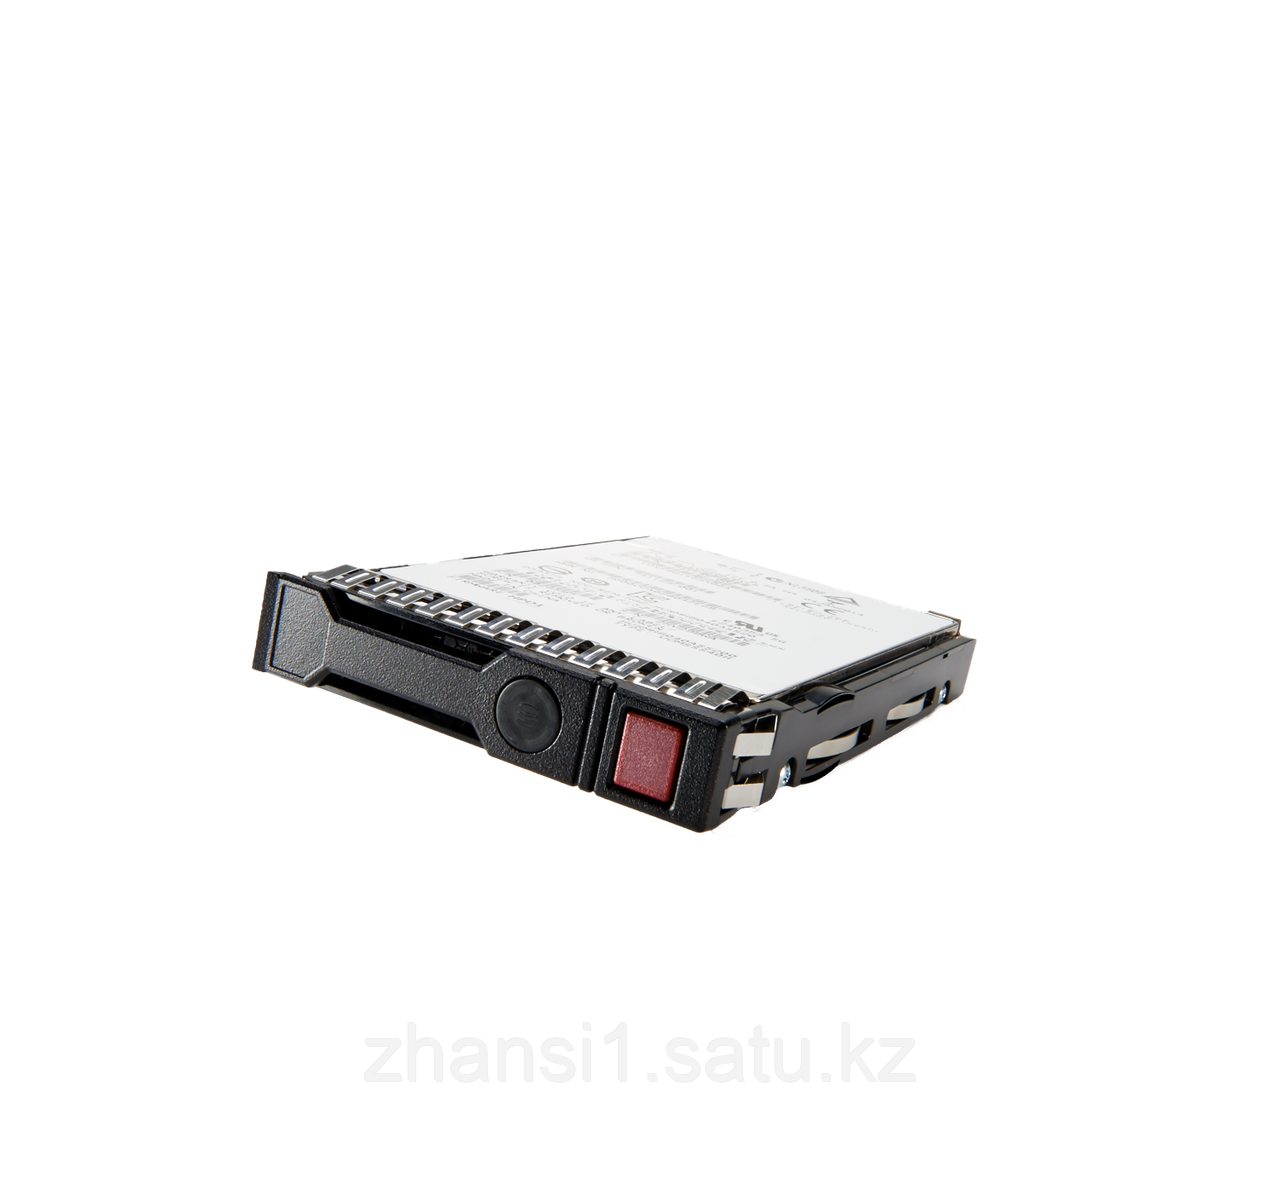 HPE 960GB SATA 6G Read Intensive SFF (2.5in) SC 3yr Wty Multi Vendor SSD